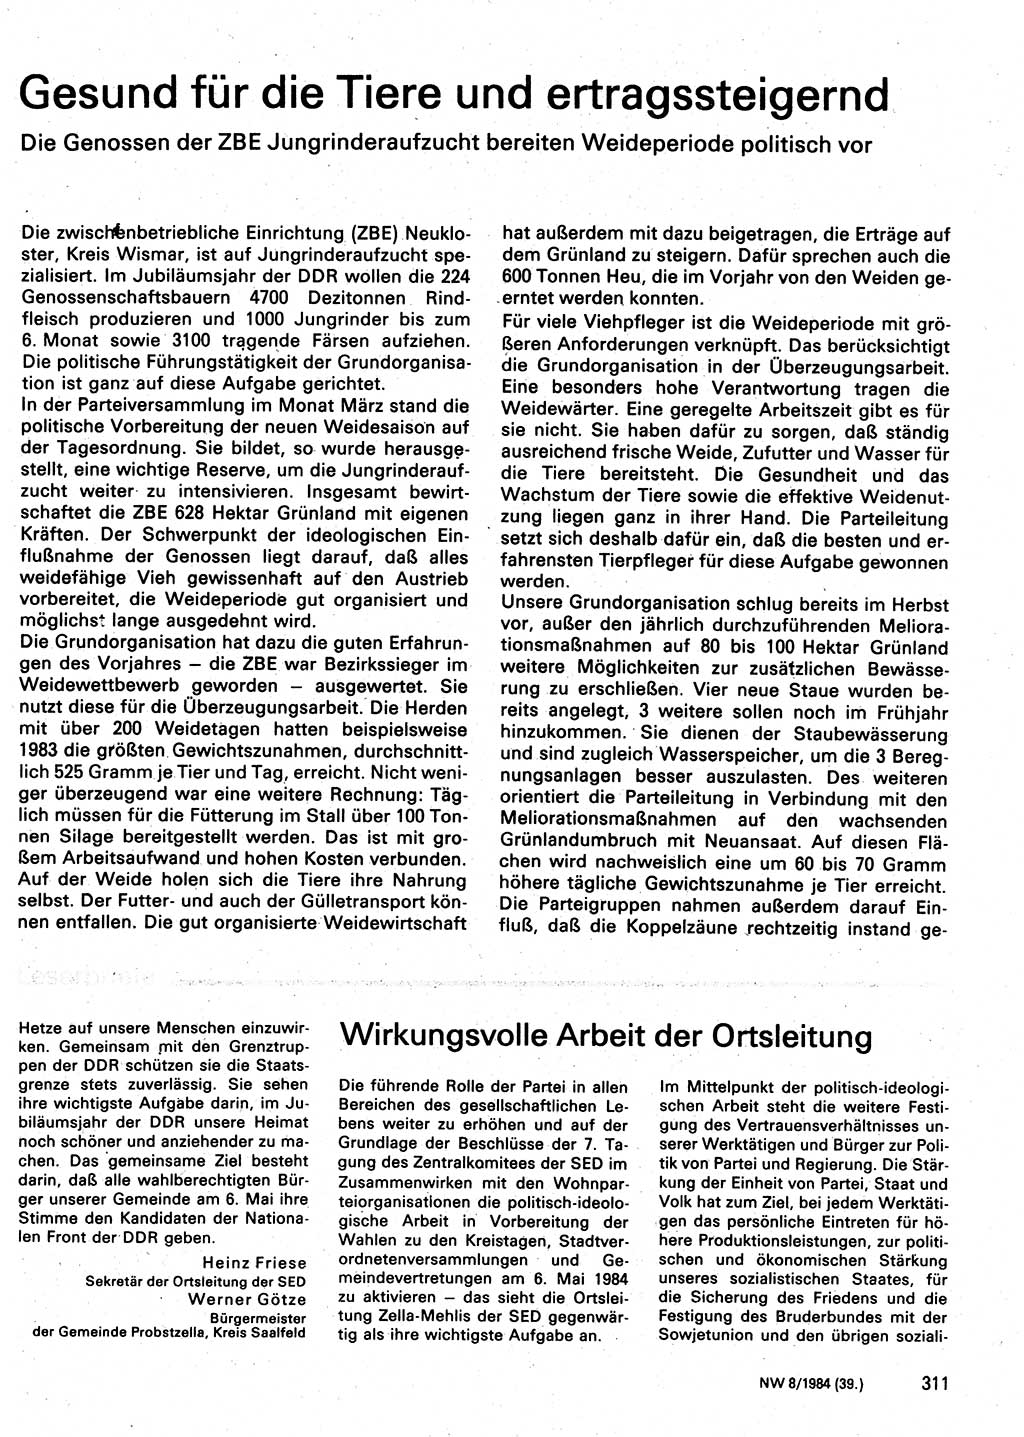 Neuer Weg (NW), Organ des Zentralkomitees (ZK) der SED (Sozialistische Einheitspartei Deutschlands) fÃ¼r Fragen des Parteilebens, 39. Jahrgang [Deutsche Demokratische Republik (DDR)] 1984, Seite 311 (NW ZK SED DDR 1984, S. 311)